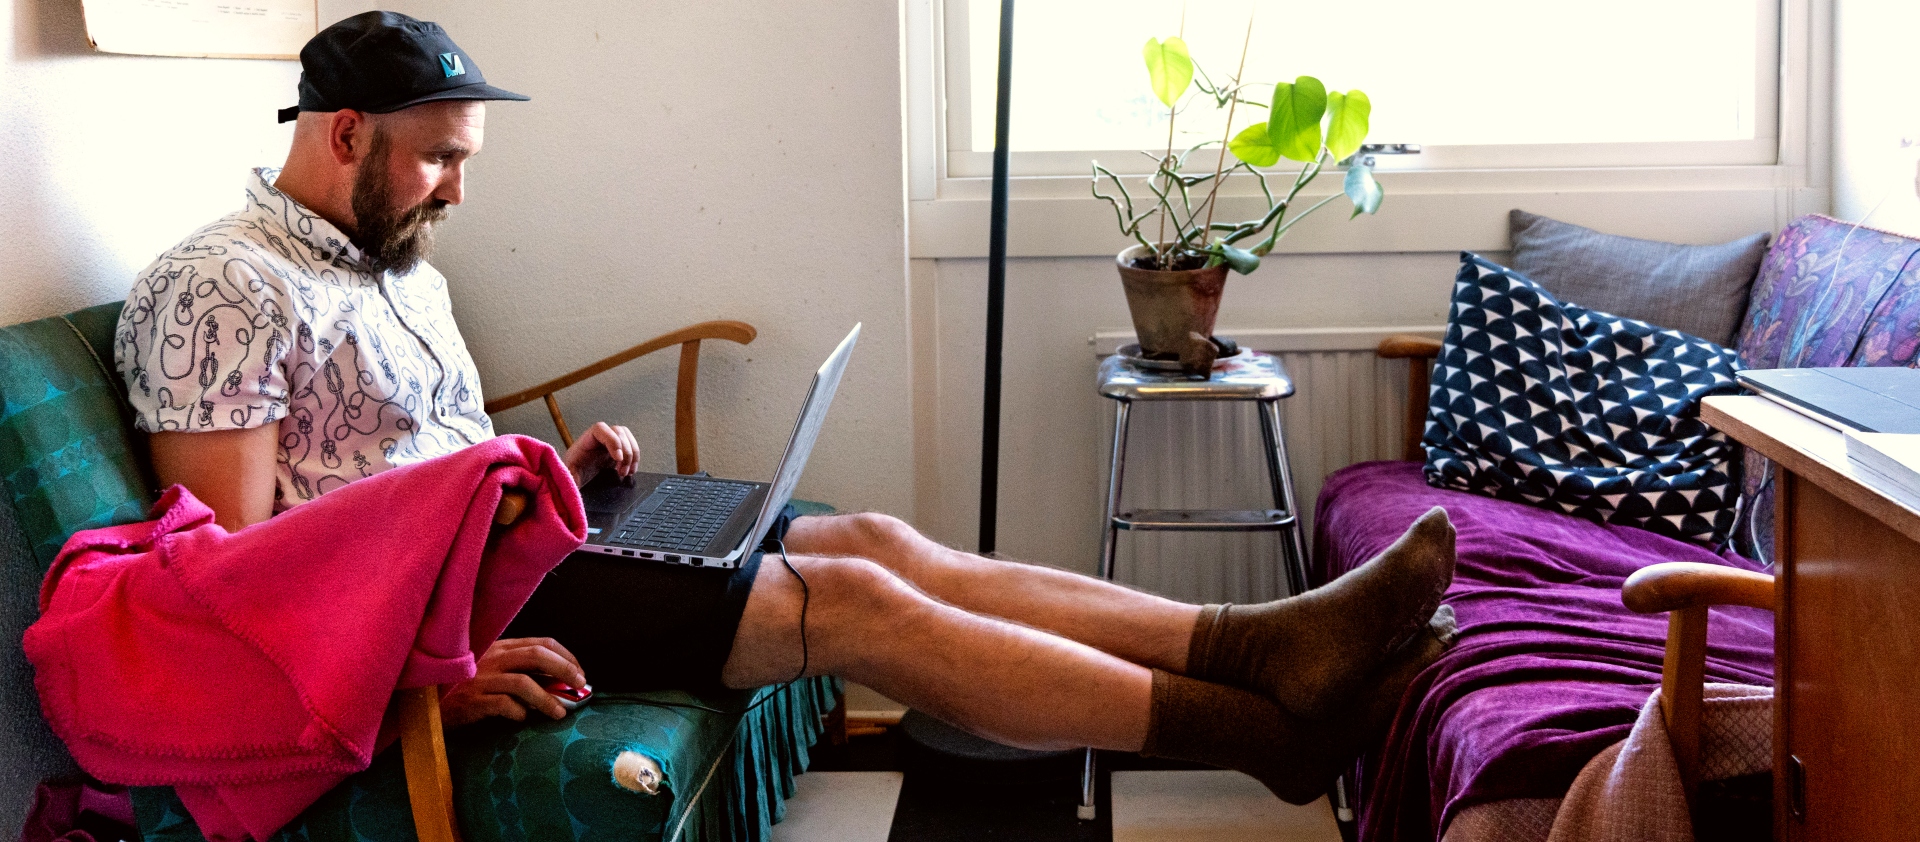 En man sitter i soffan med en dator i knäet